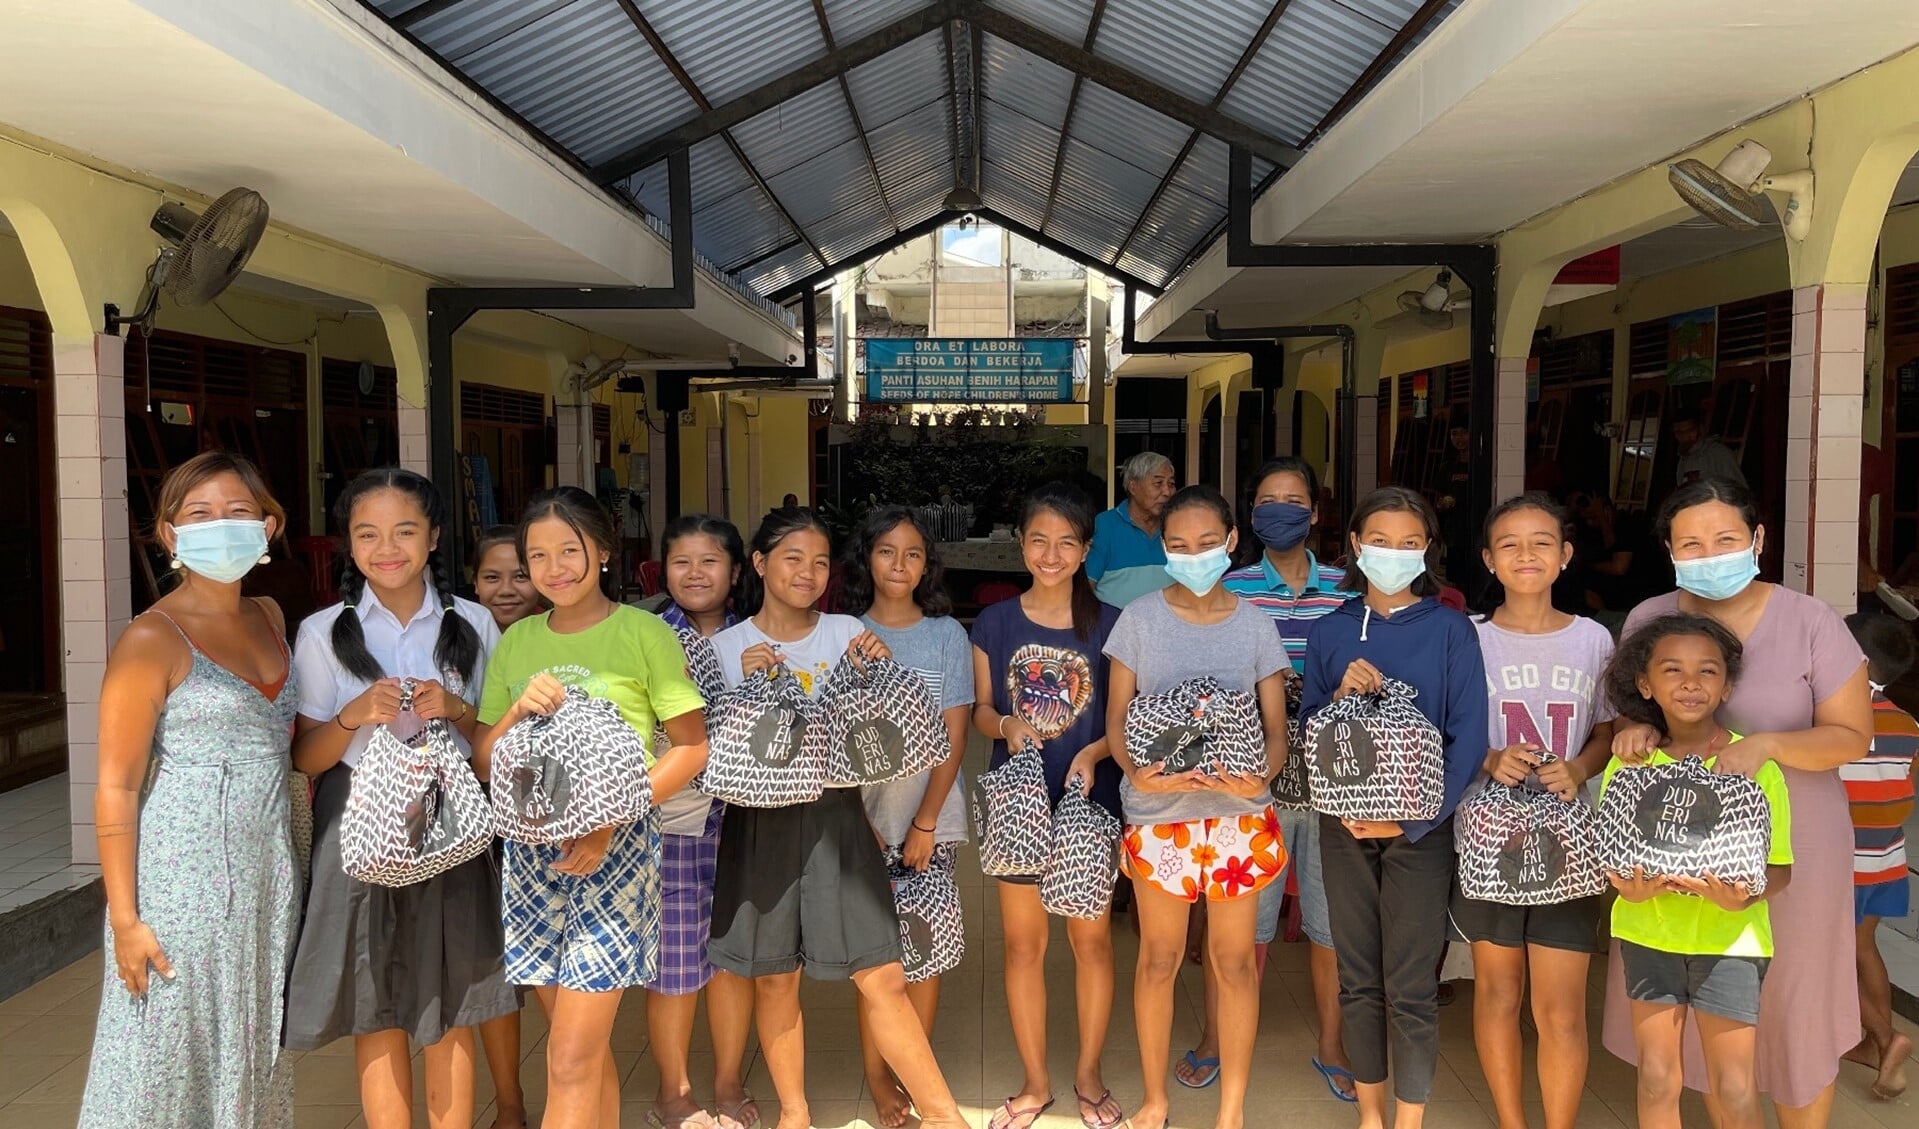  het meisjes weeshuis waar de eerste pakketten zijn uitgedeeld. Uiterst links op de foto staat initiatiefneemster Pritha Maheswari
Foto-credits: Eny Setiyowati